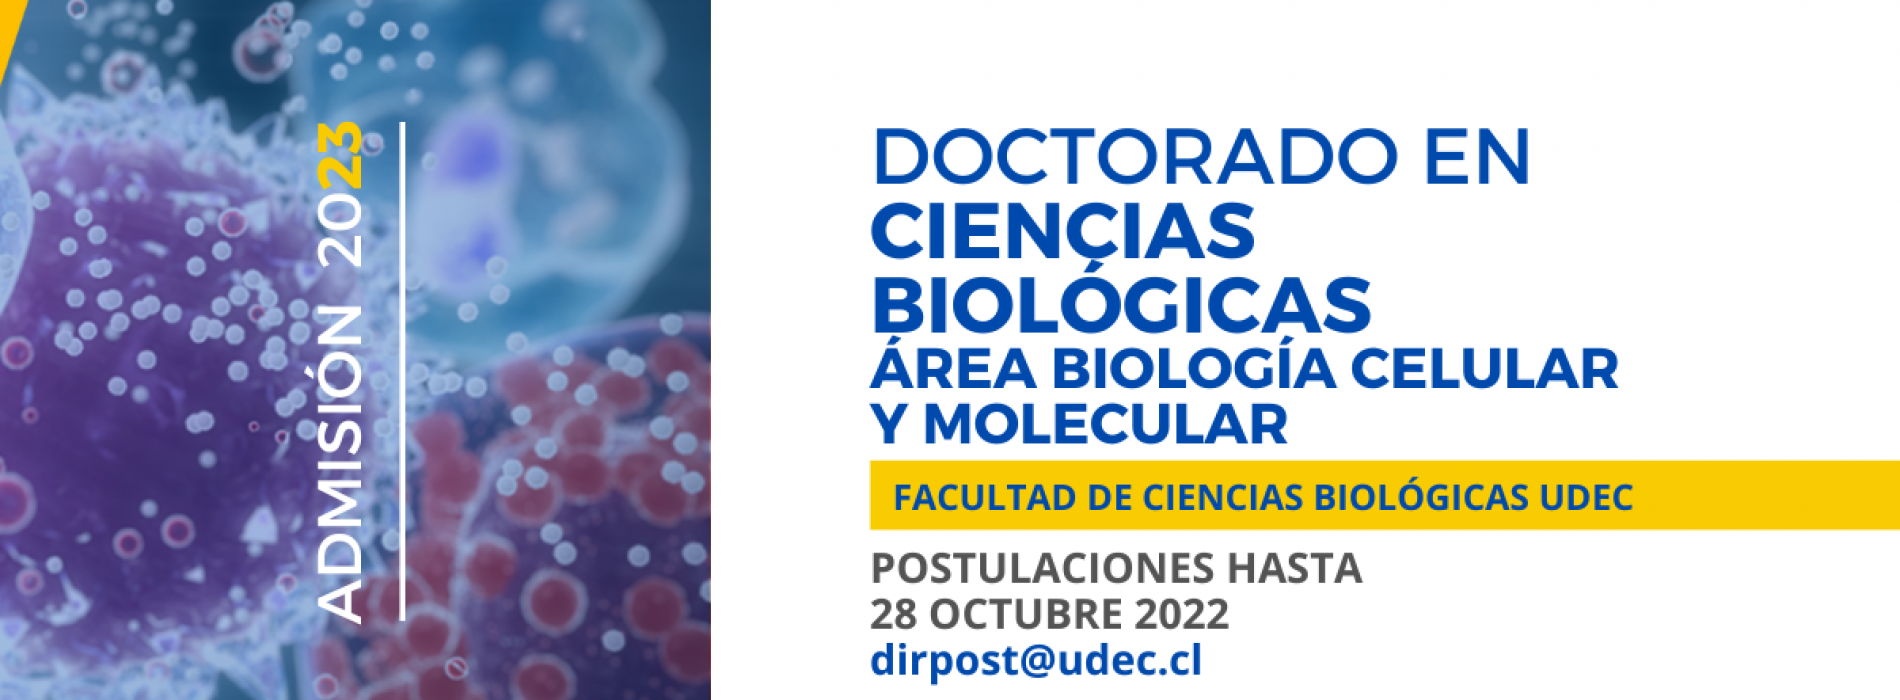 PhD in Biological Sciences, Universidad de Concepción 2023